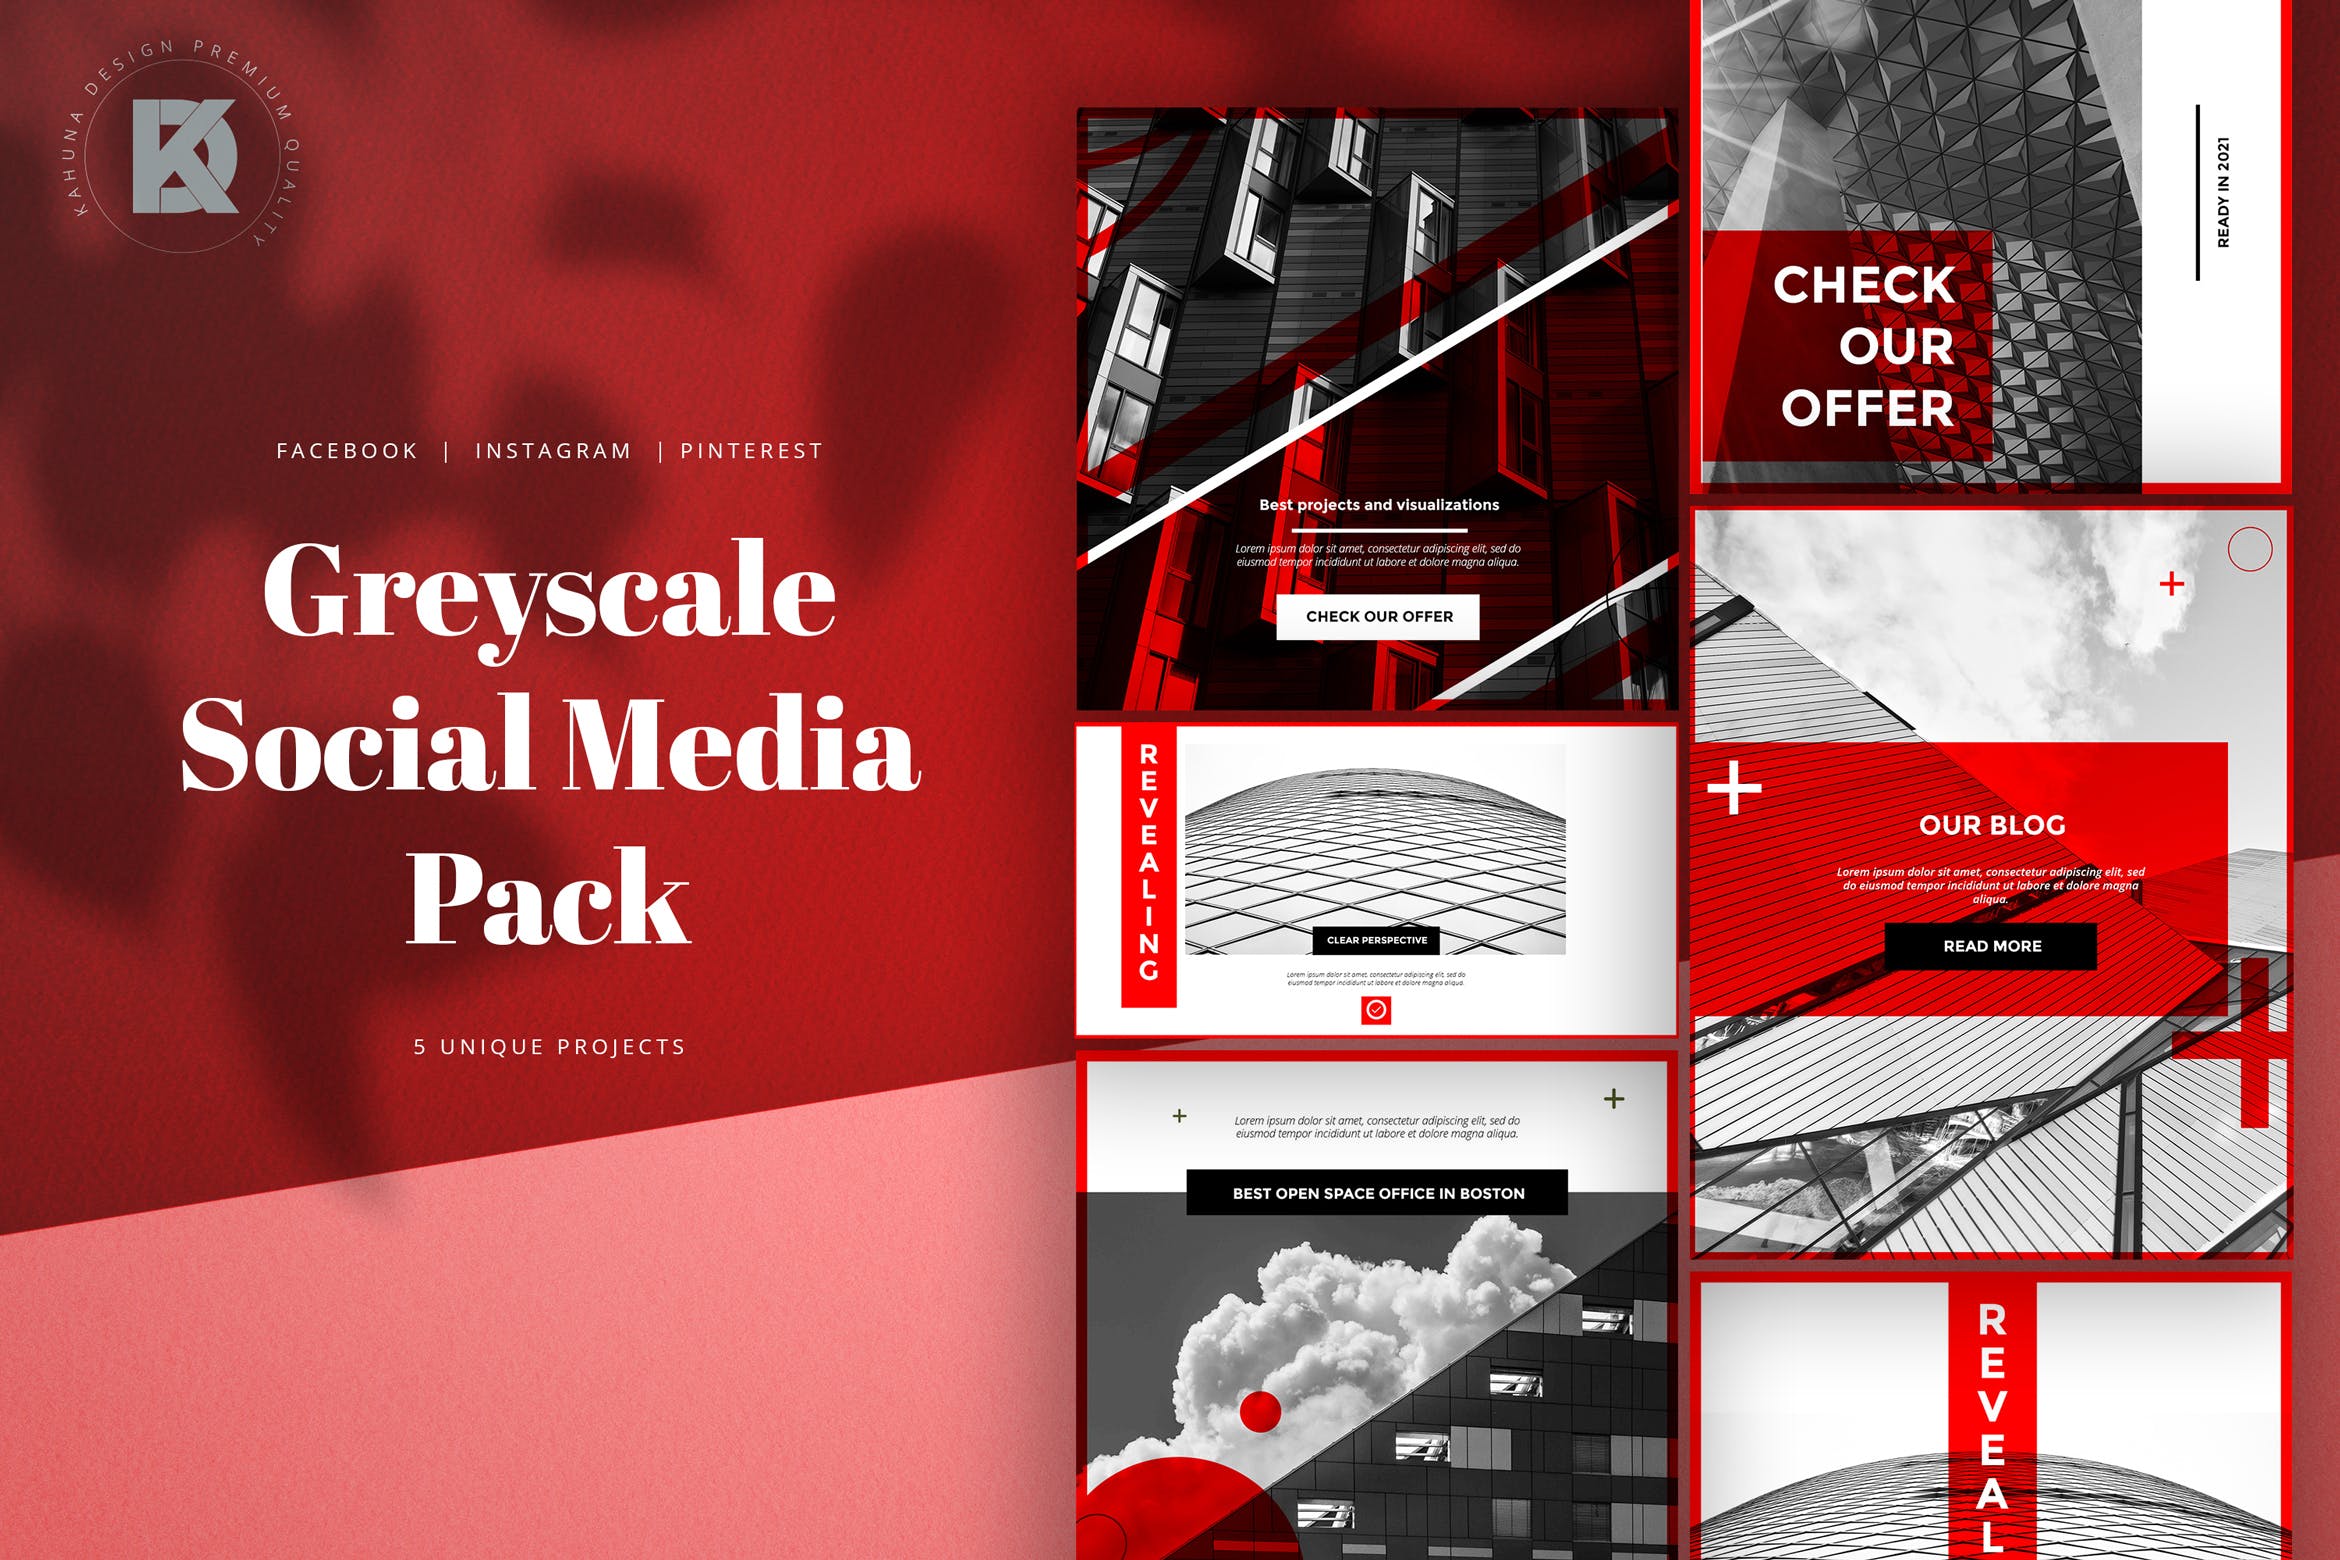 灰度红创意社交媒体大洋岛精选广告模板素材 Greyscale Red Social Media Pack插图